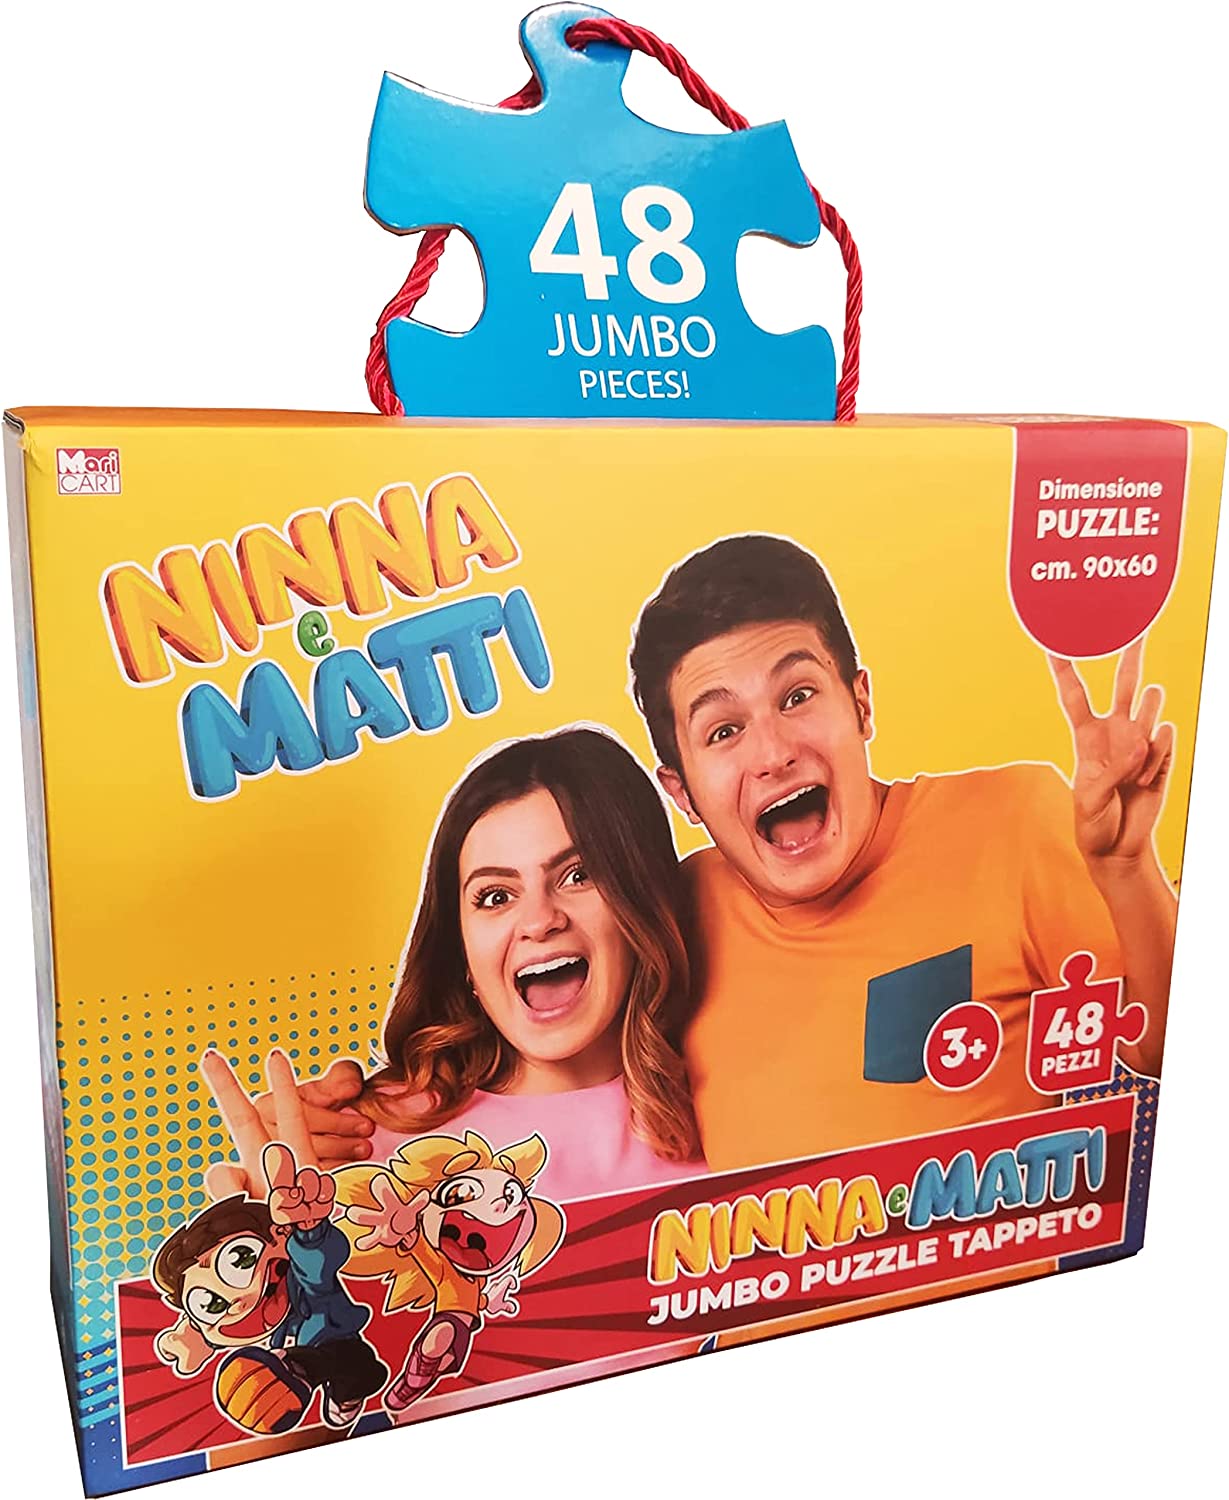 Ninna e Matti Tappeto Puzzle Jumbo, Tema Foto, Colore Giallo, Dimensioni 90x60cm, 48 pezzi